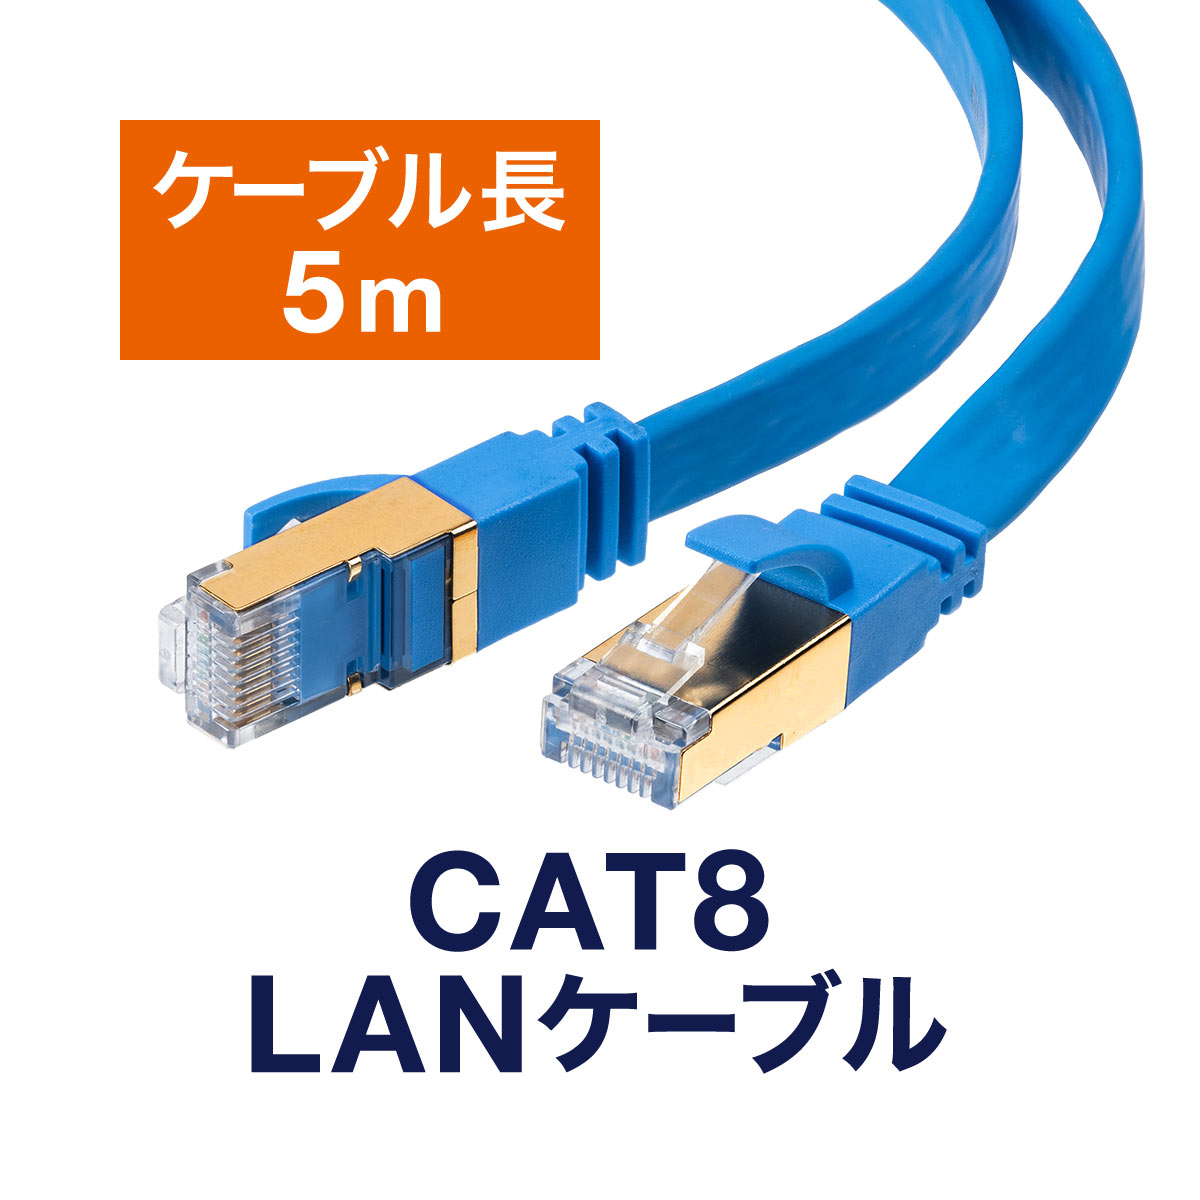 【楽天市場】LANケーブル 自作用 300m カテゴリ5e 単線 UTP